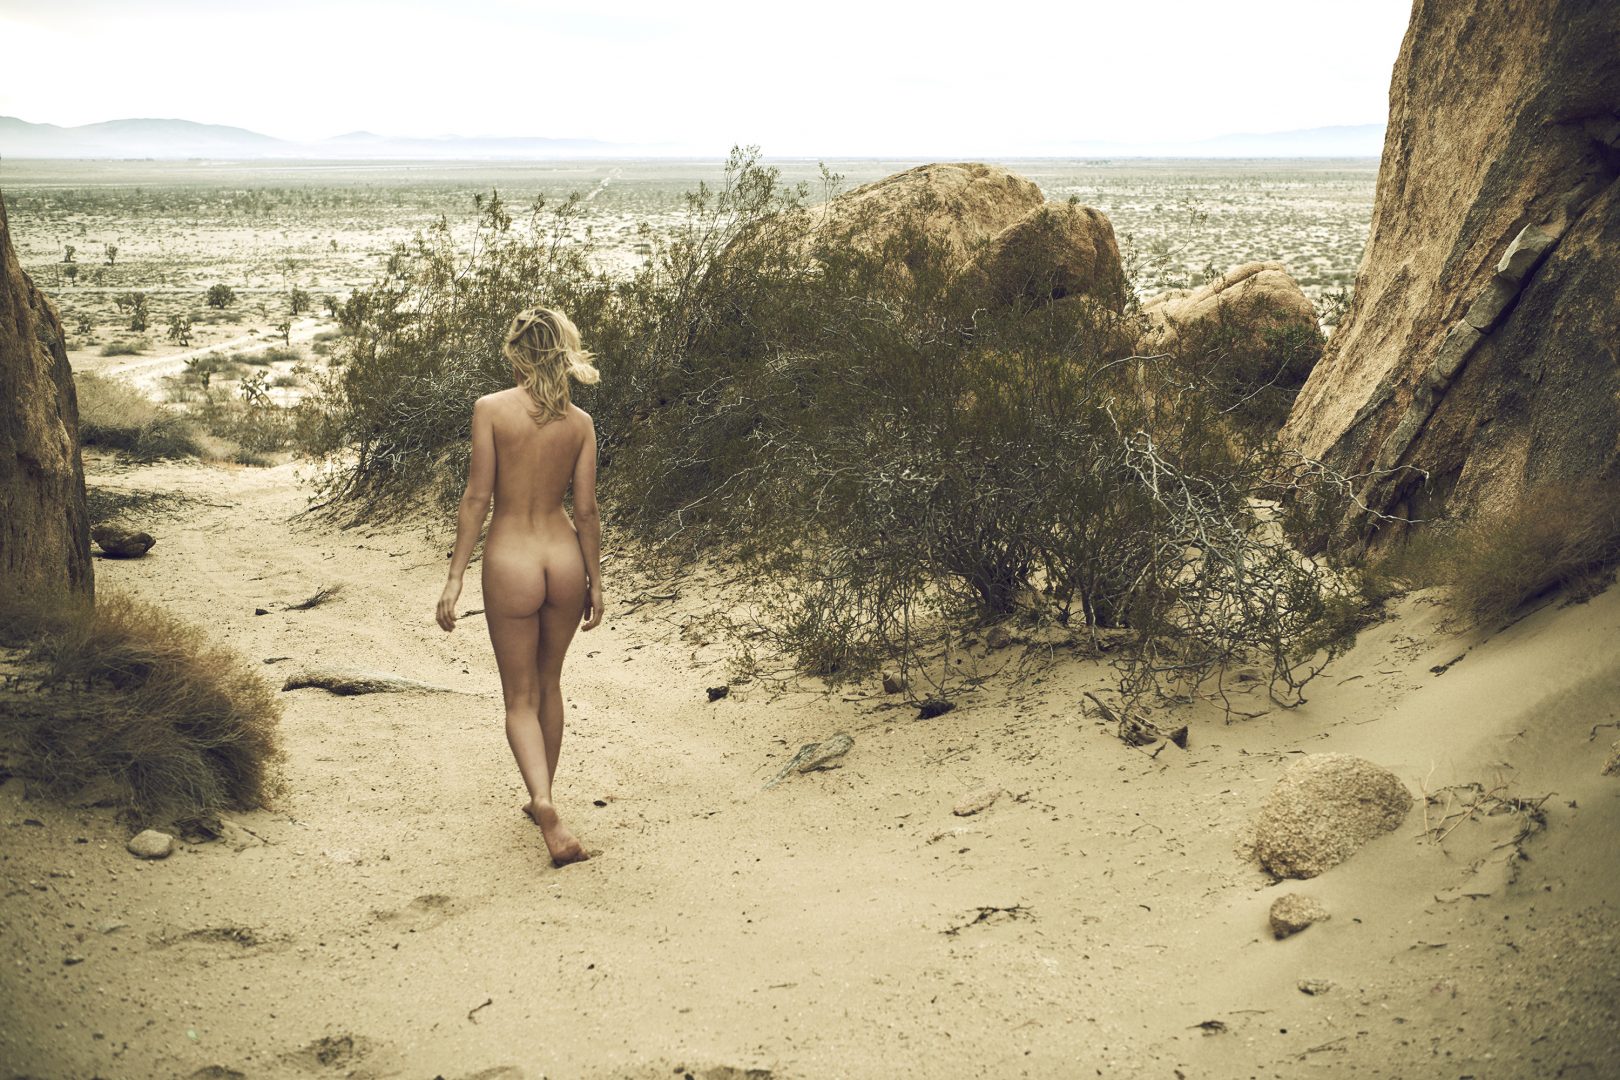 Naked girl walking in desert by Stefan Rappo